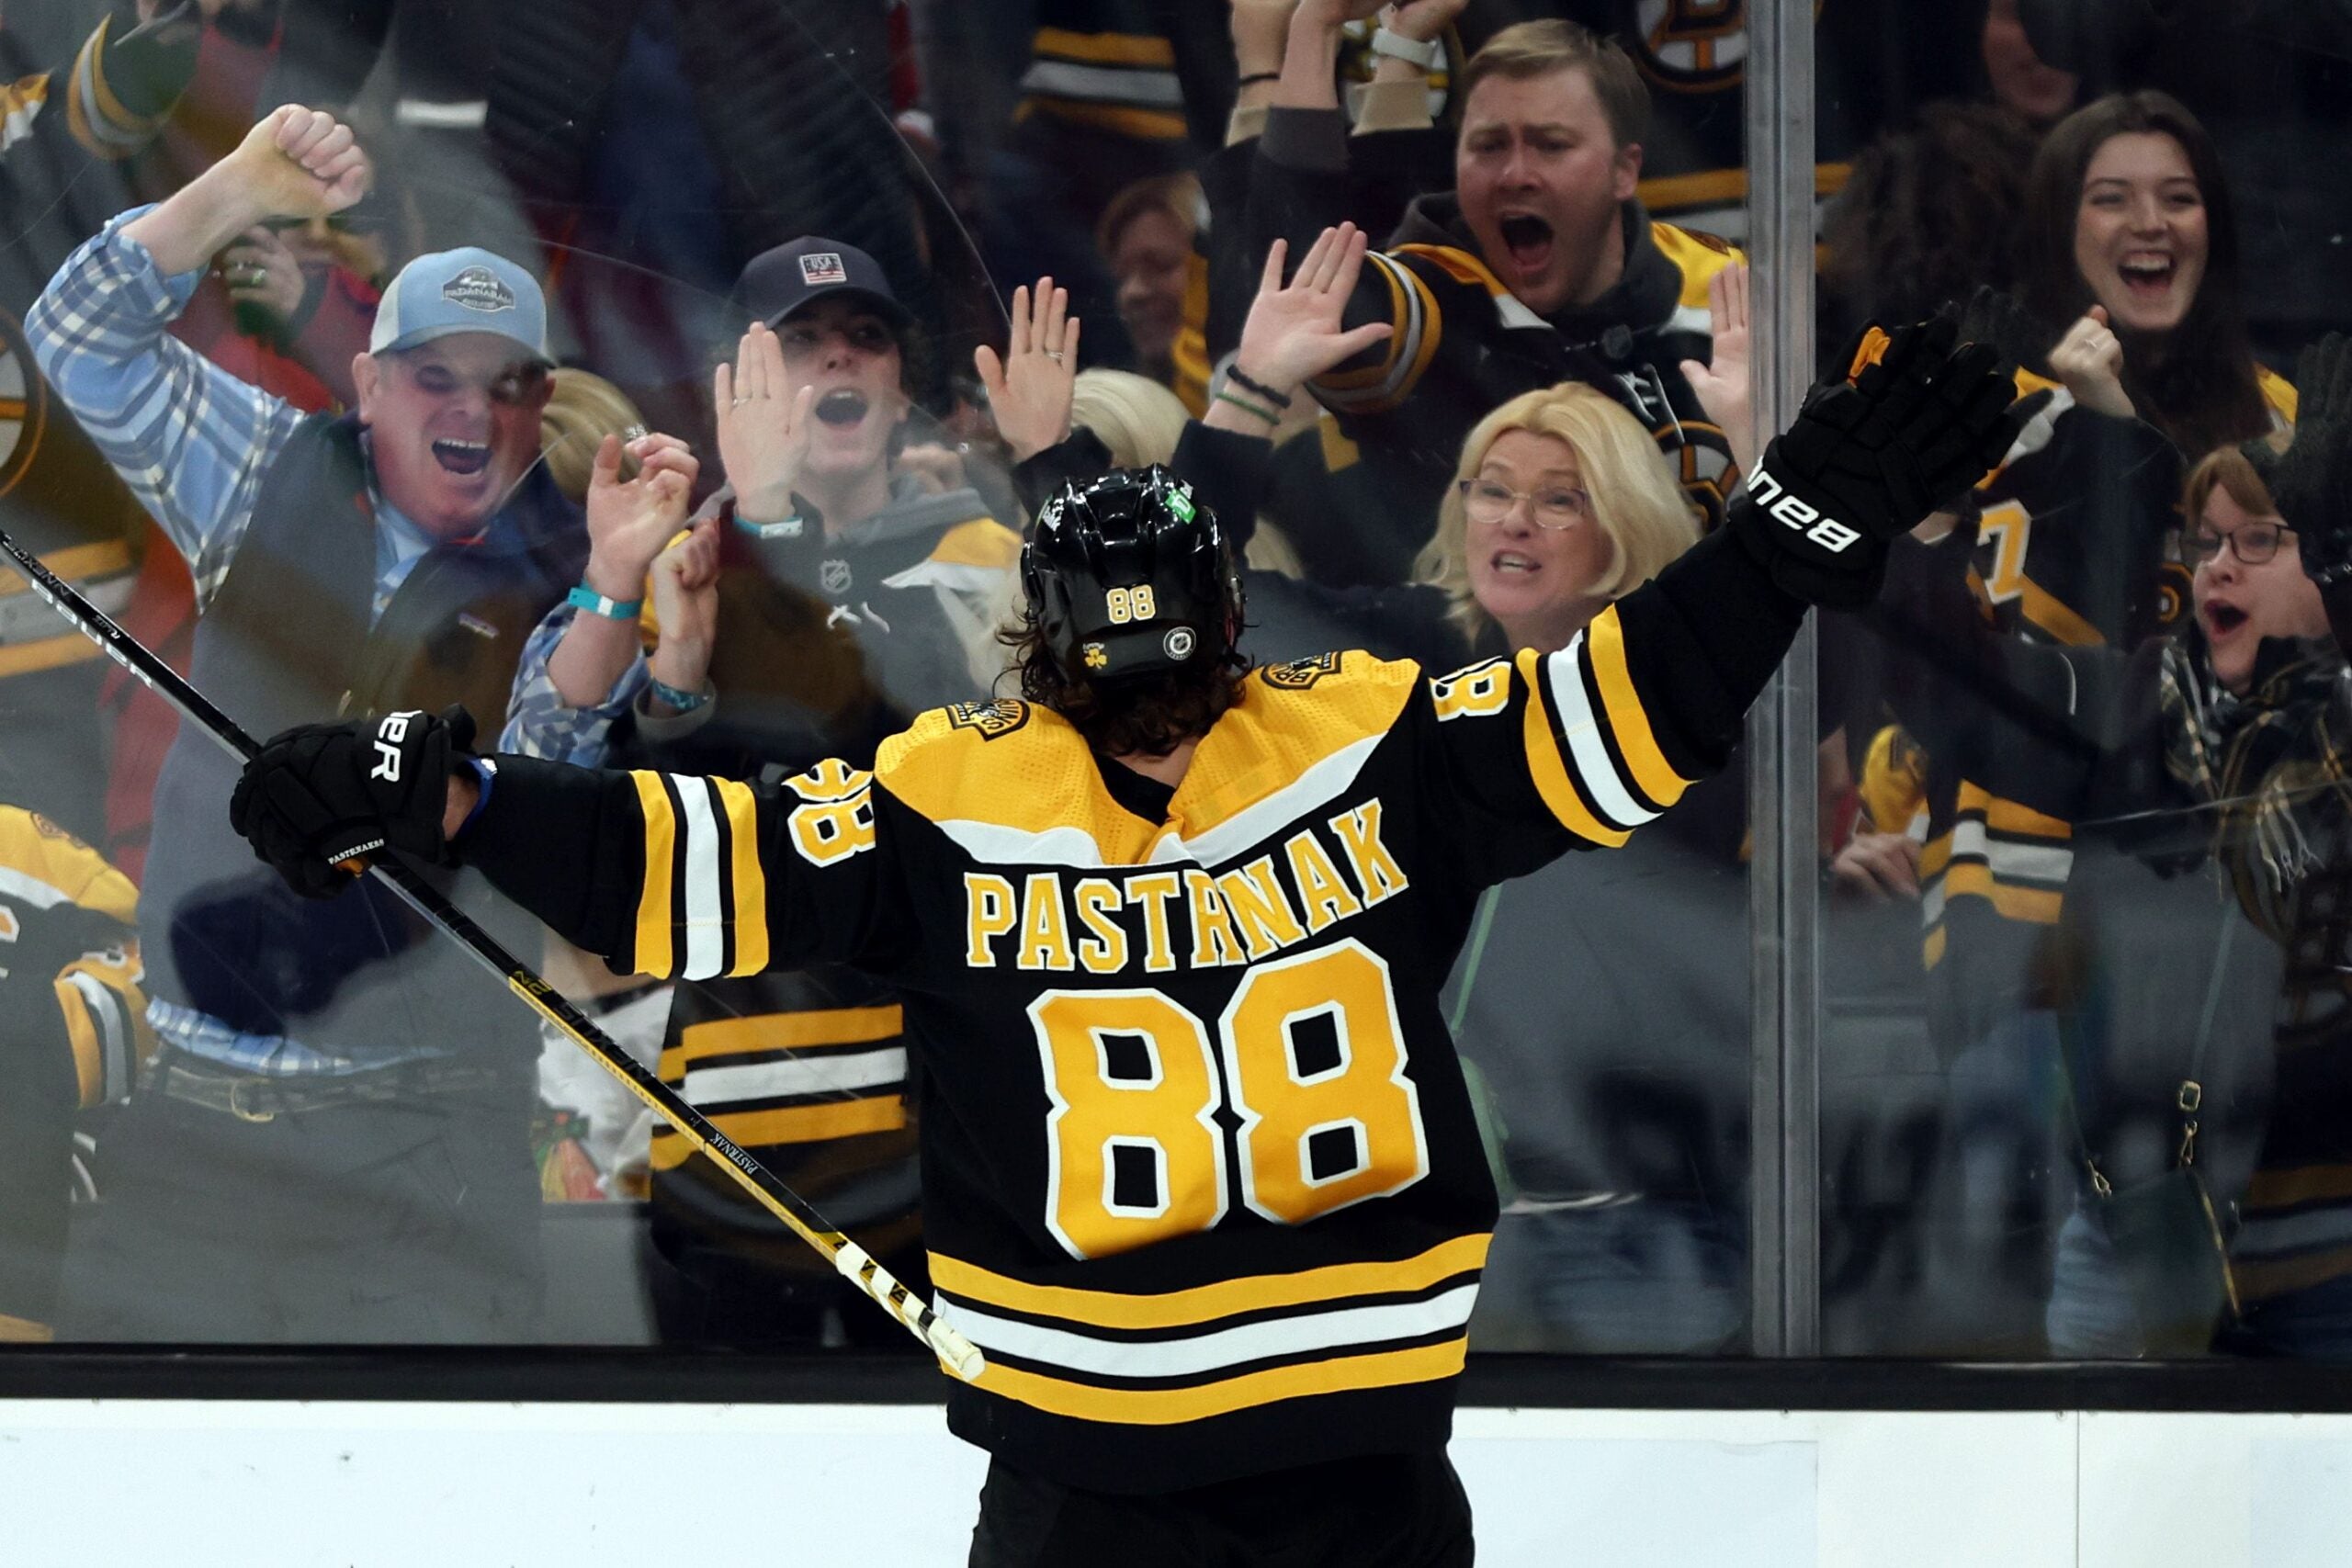 Pastrnak pots 2 to lead Bruins past Blackhawks 3-1